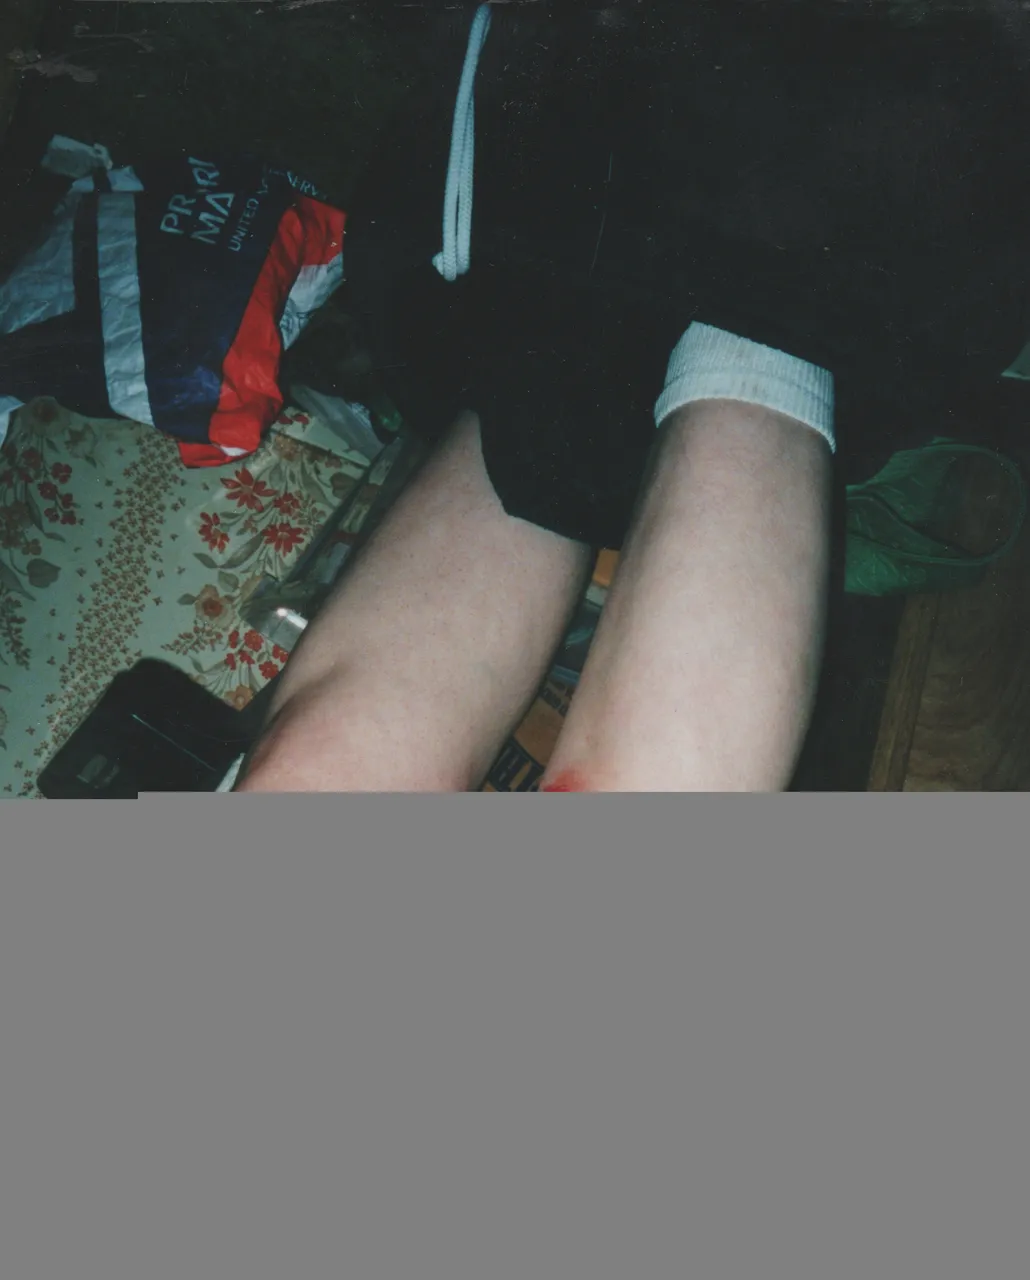 2001-12-06 - Legs Injured - Wound - Maybe Katie.jpg